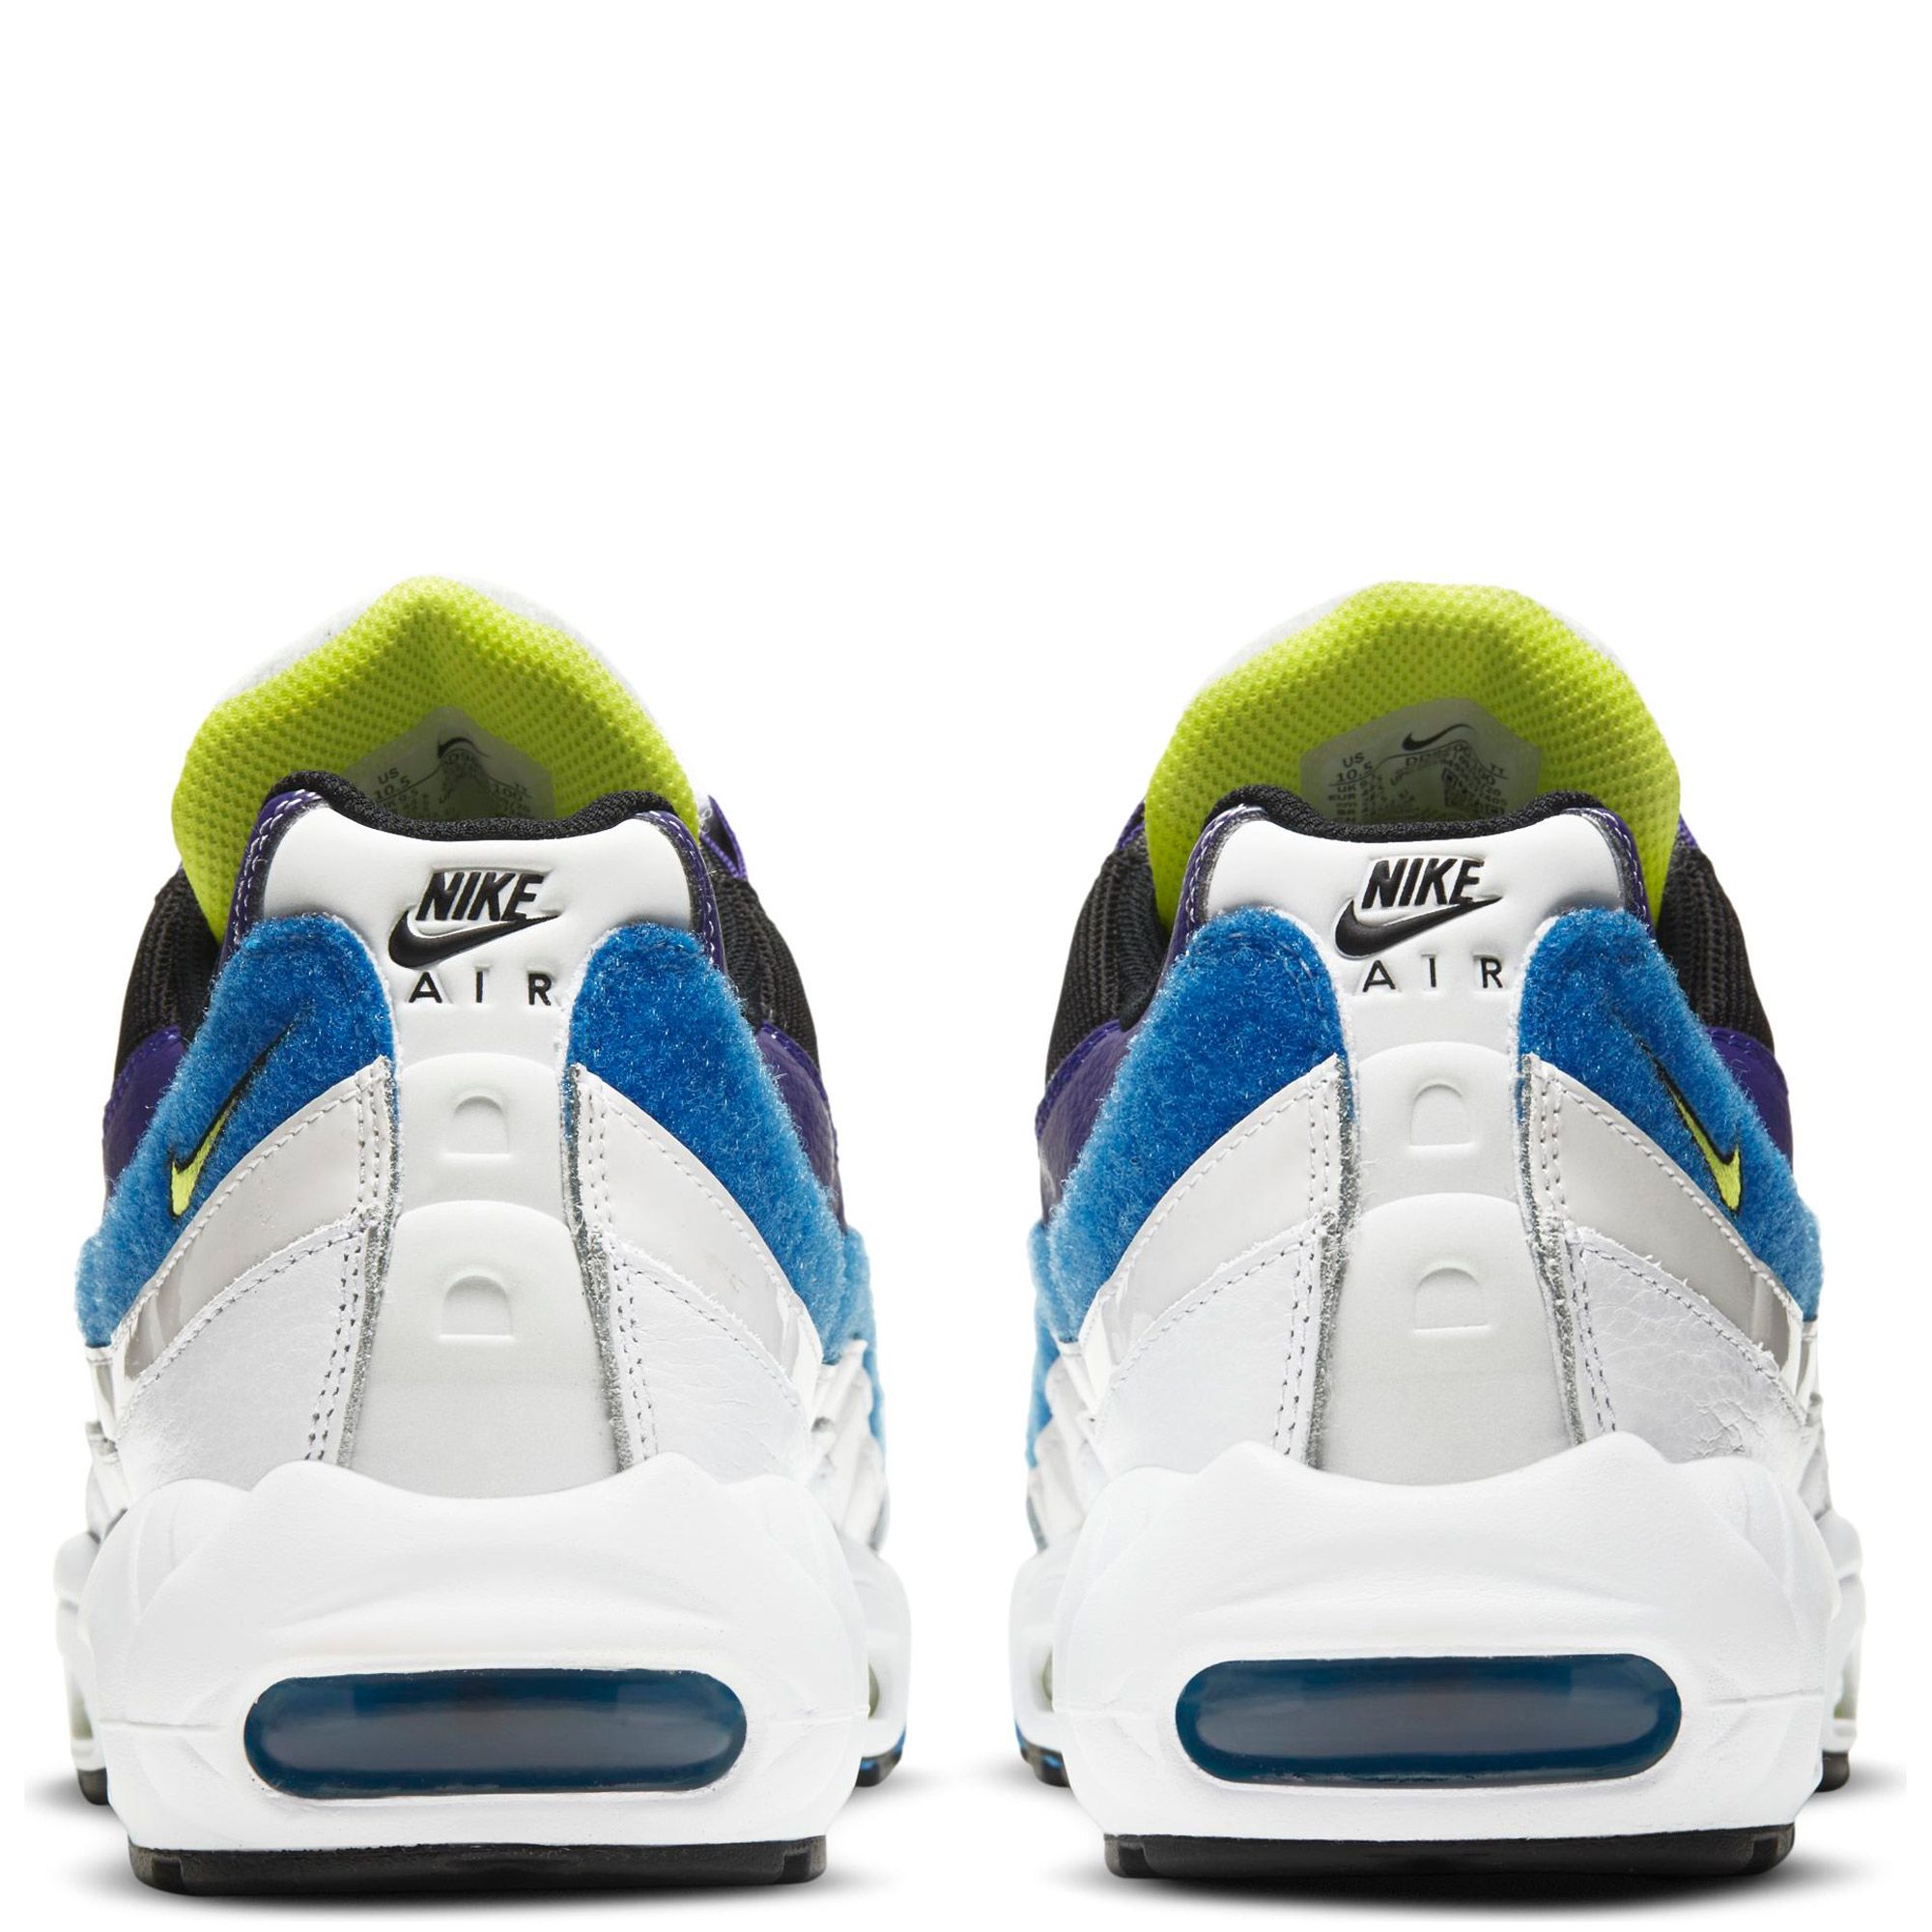 Nike Air Max 95 White Black Blue Gaze - Size 9 Men